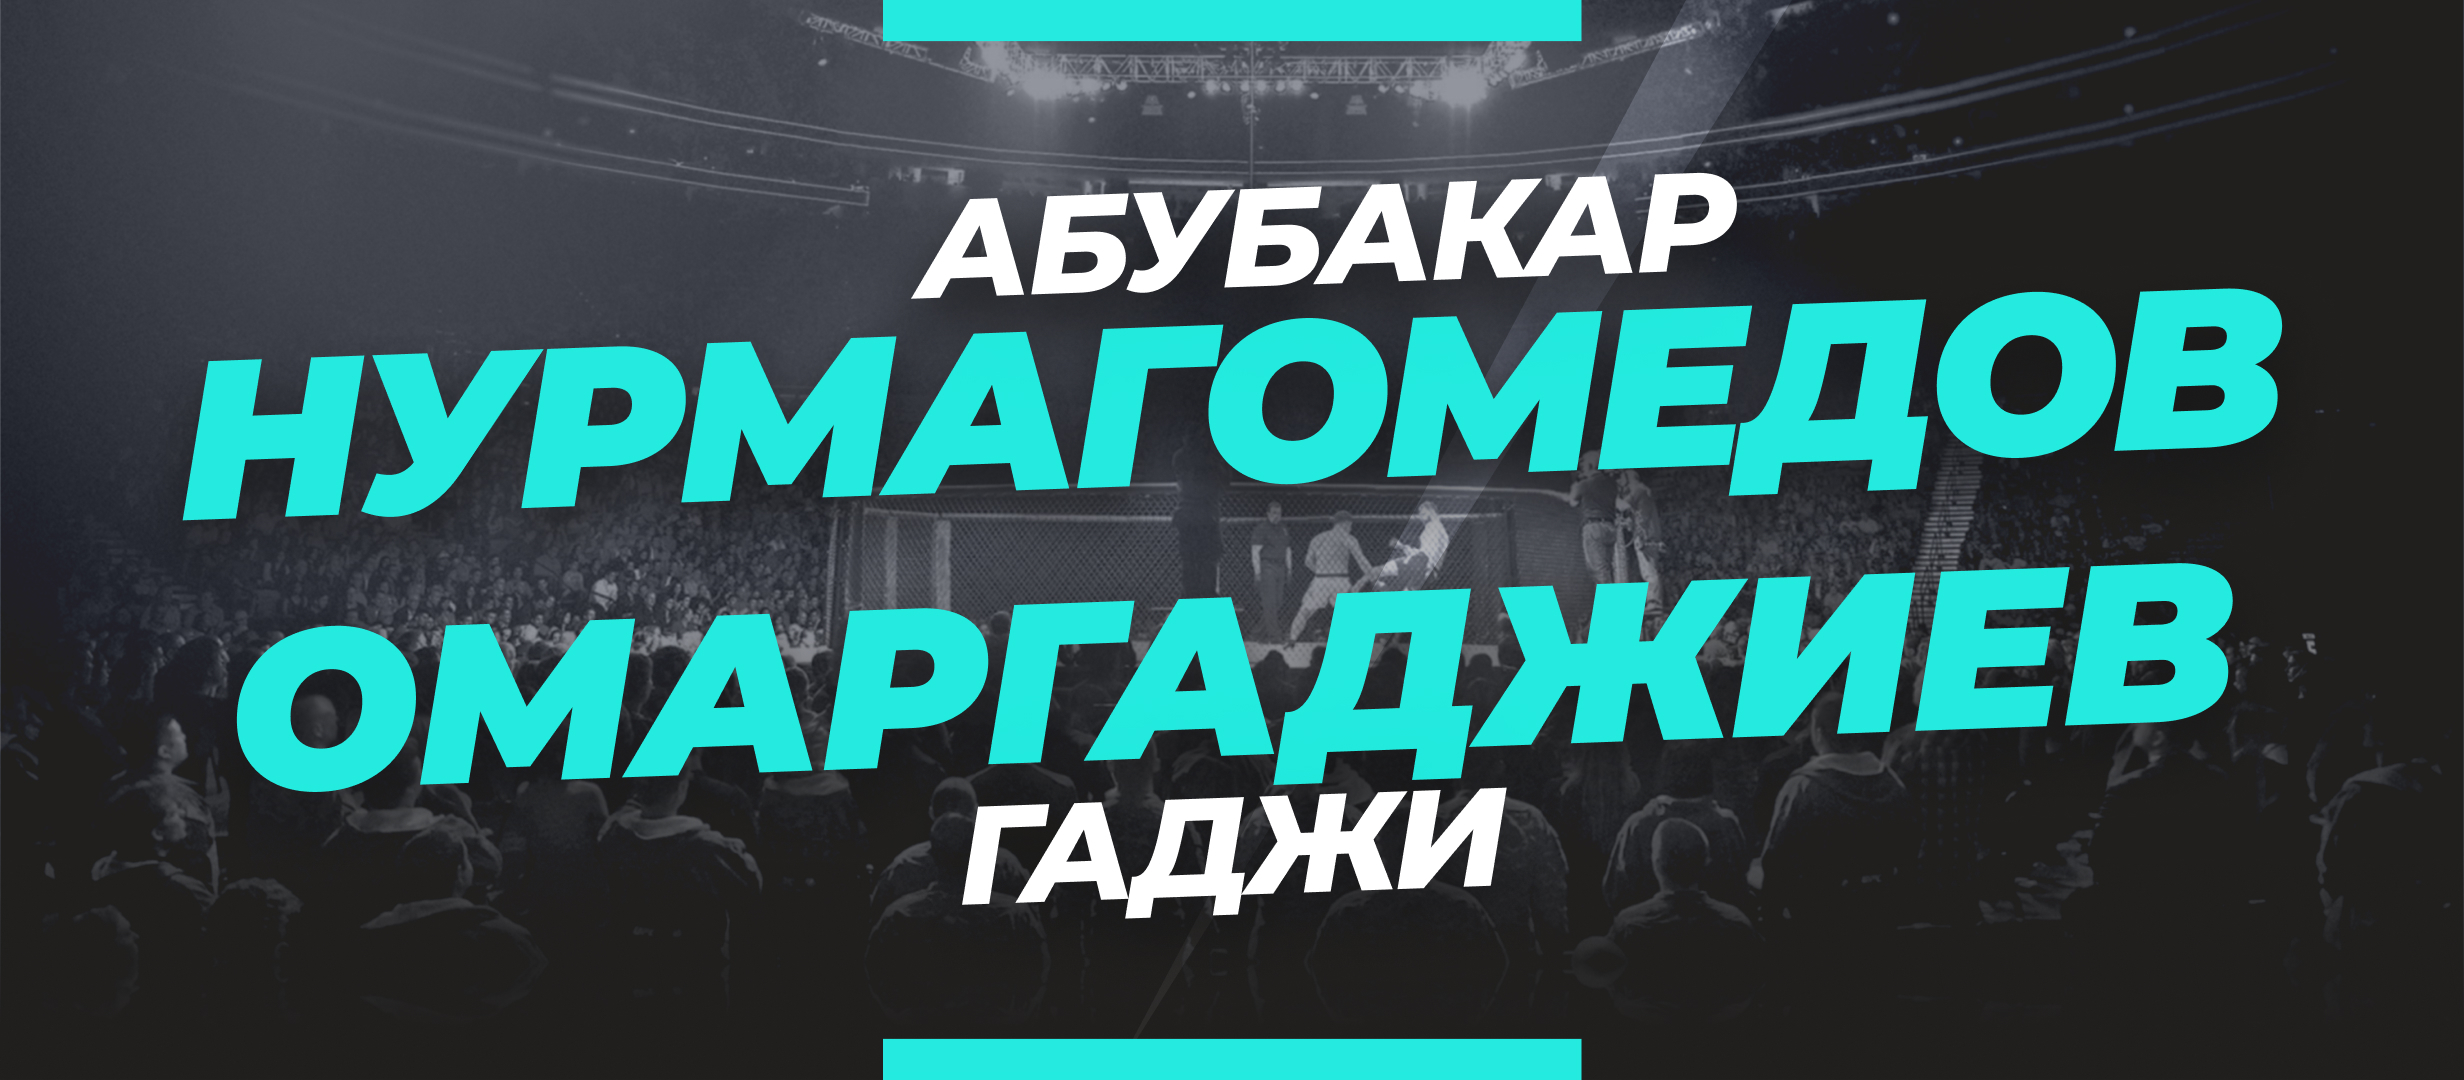 Нурмагомедов – Омаргаджиев: ставки и коэффициенты на бой UFC 280